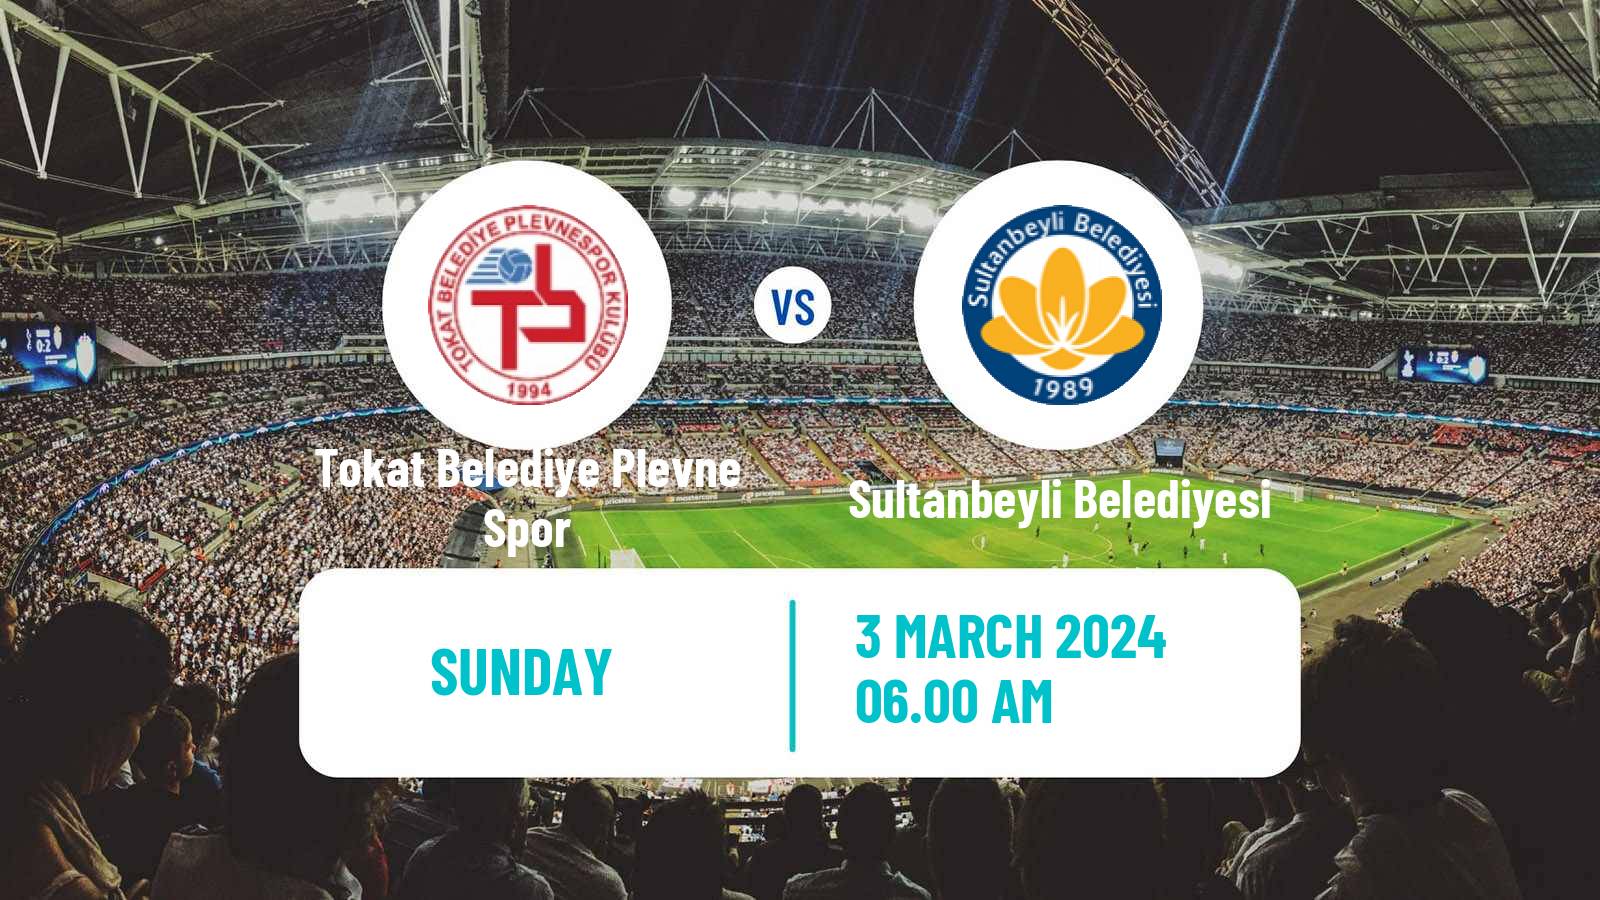 Soccer Turkish 3 Lig Group 4 Tokat Belediye Plevne Spor - Sultanbeyli Belediyesi